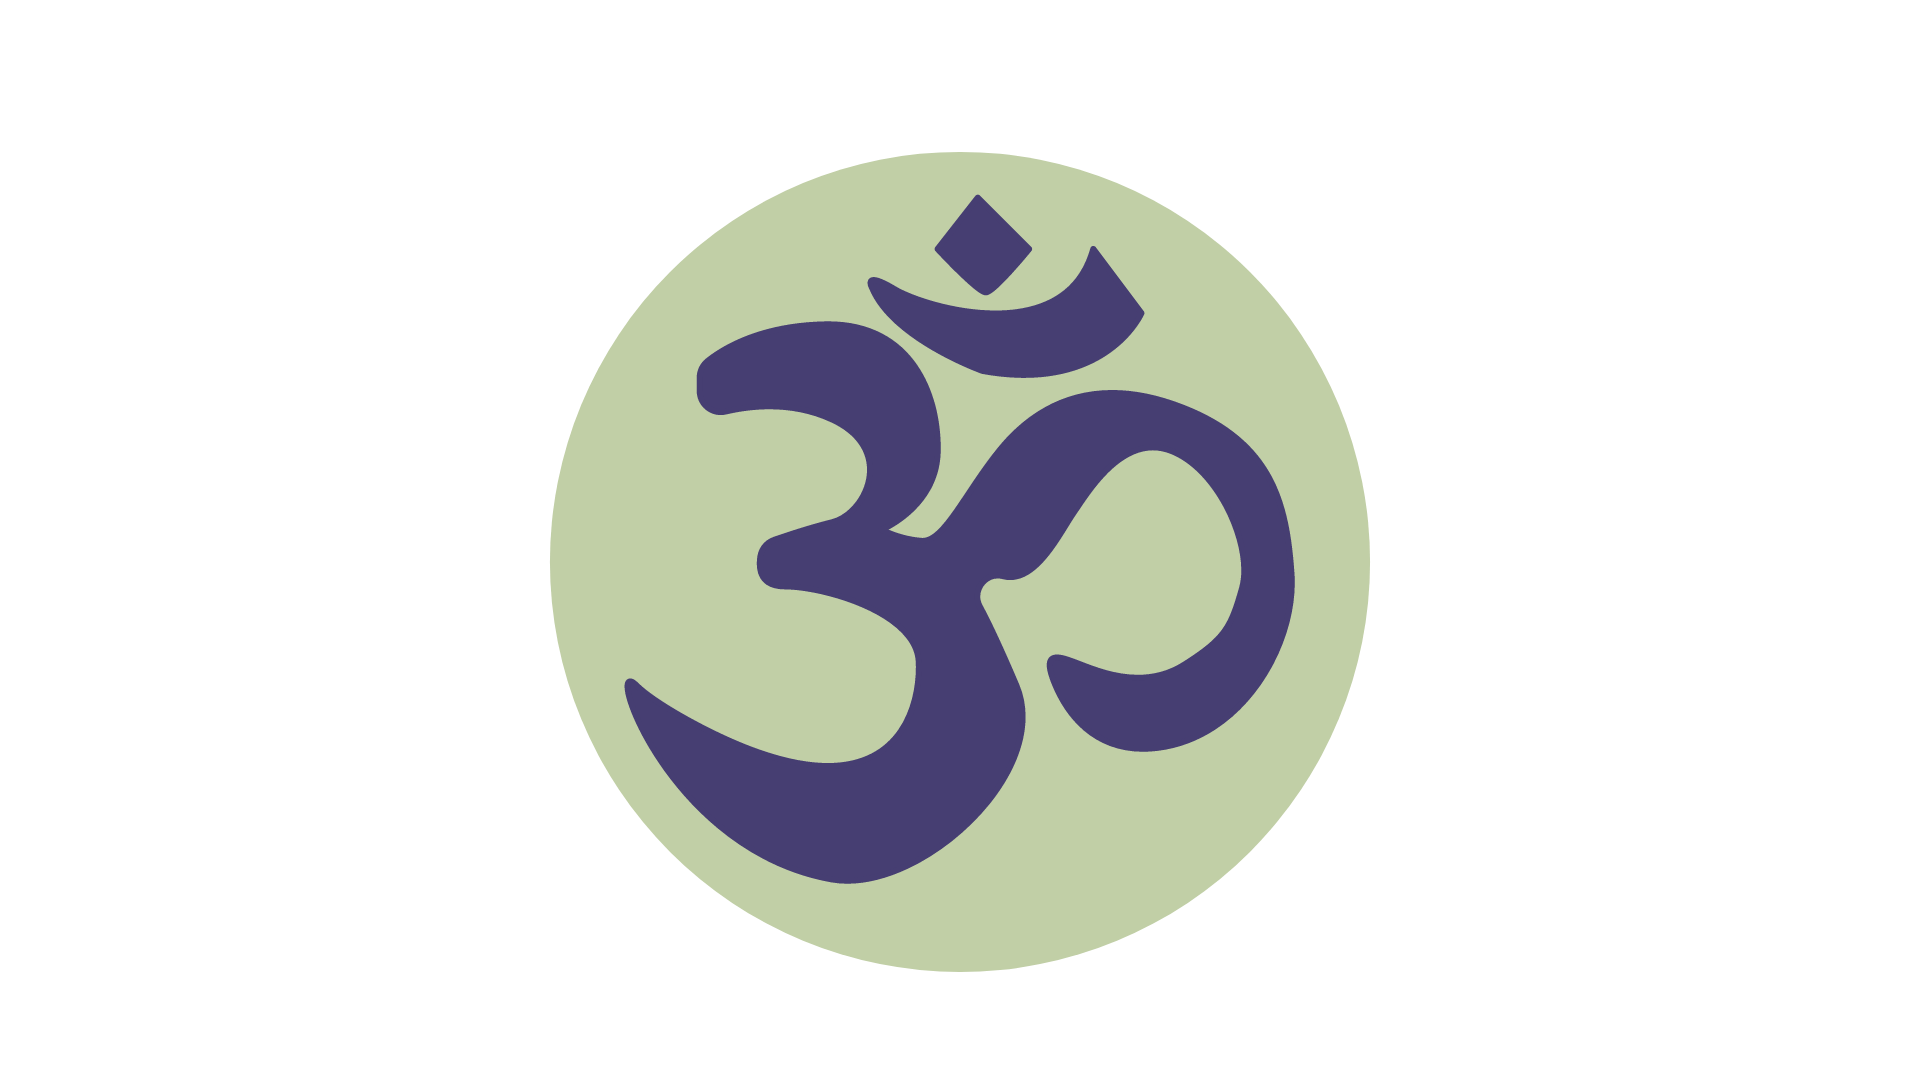 symbol of om or aum - mindful soul center